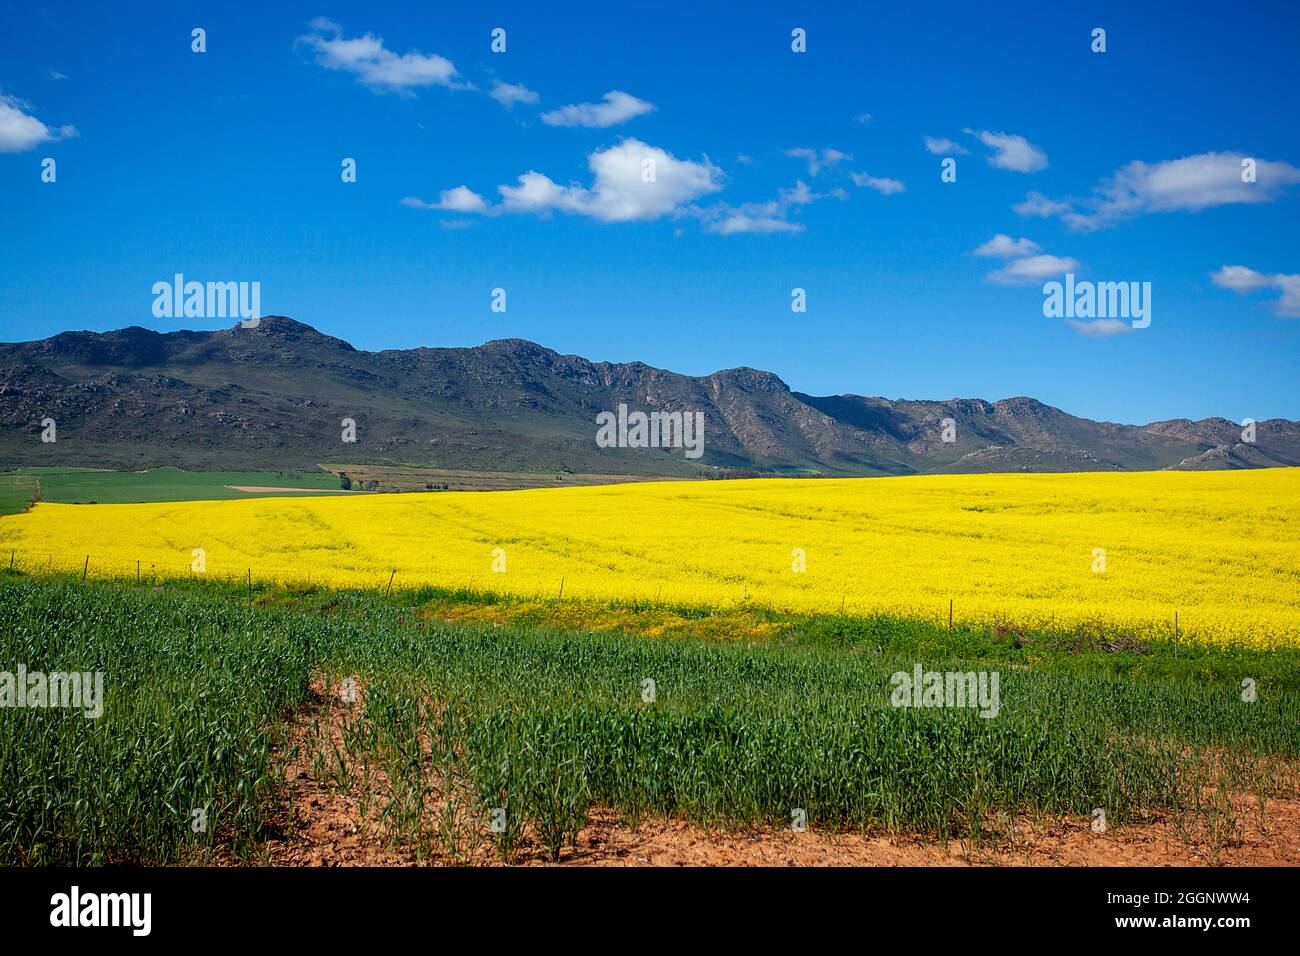 N7 vicino a R365, Cedersberg, Capo Occidentale, Sudafrica. Campi di colza / colza in piena fioritura. Foto Stock